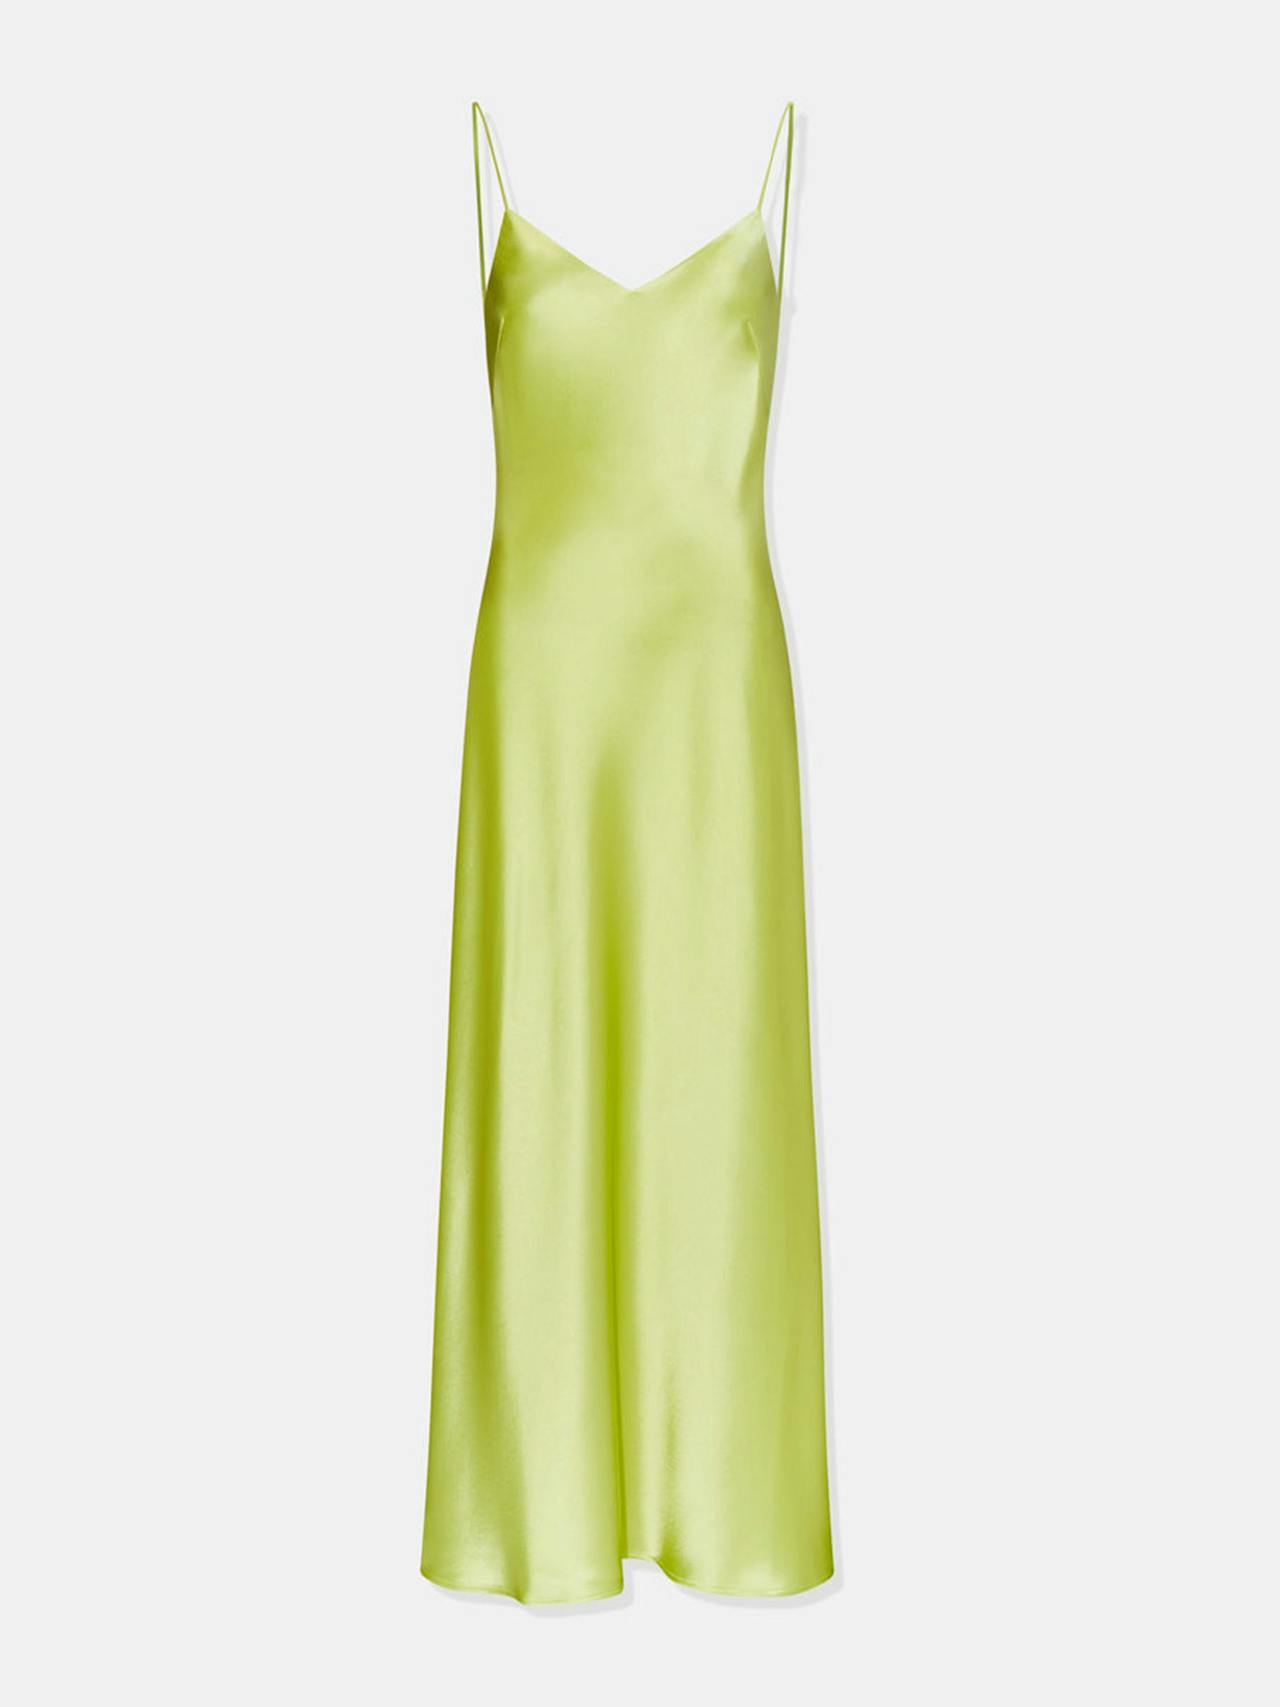 V-neck cropped citron slip dress